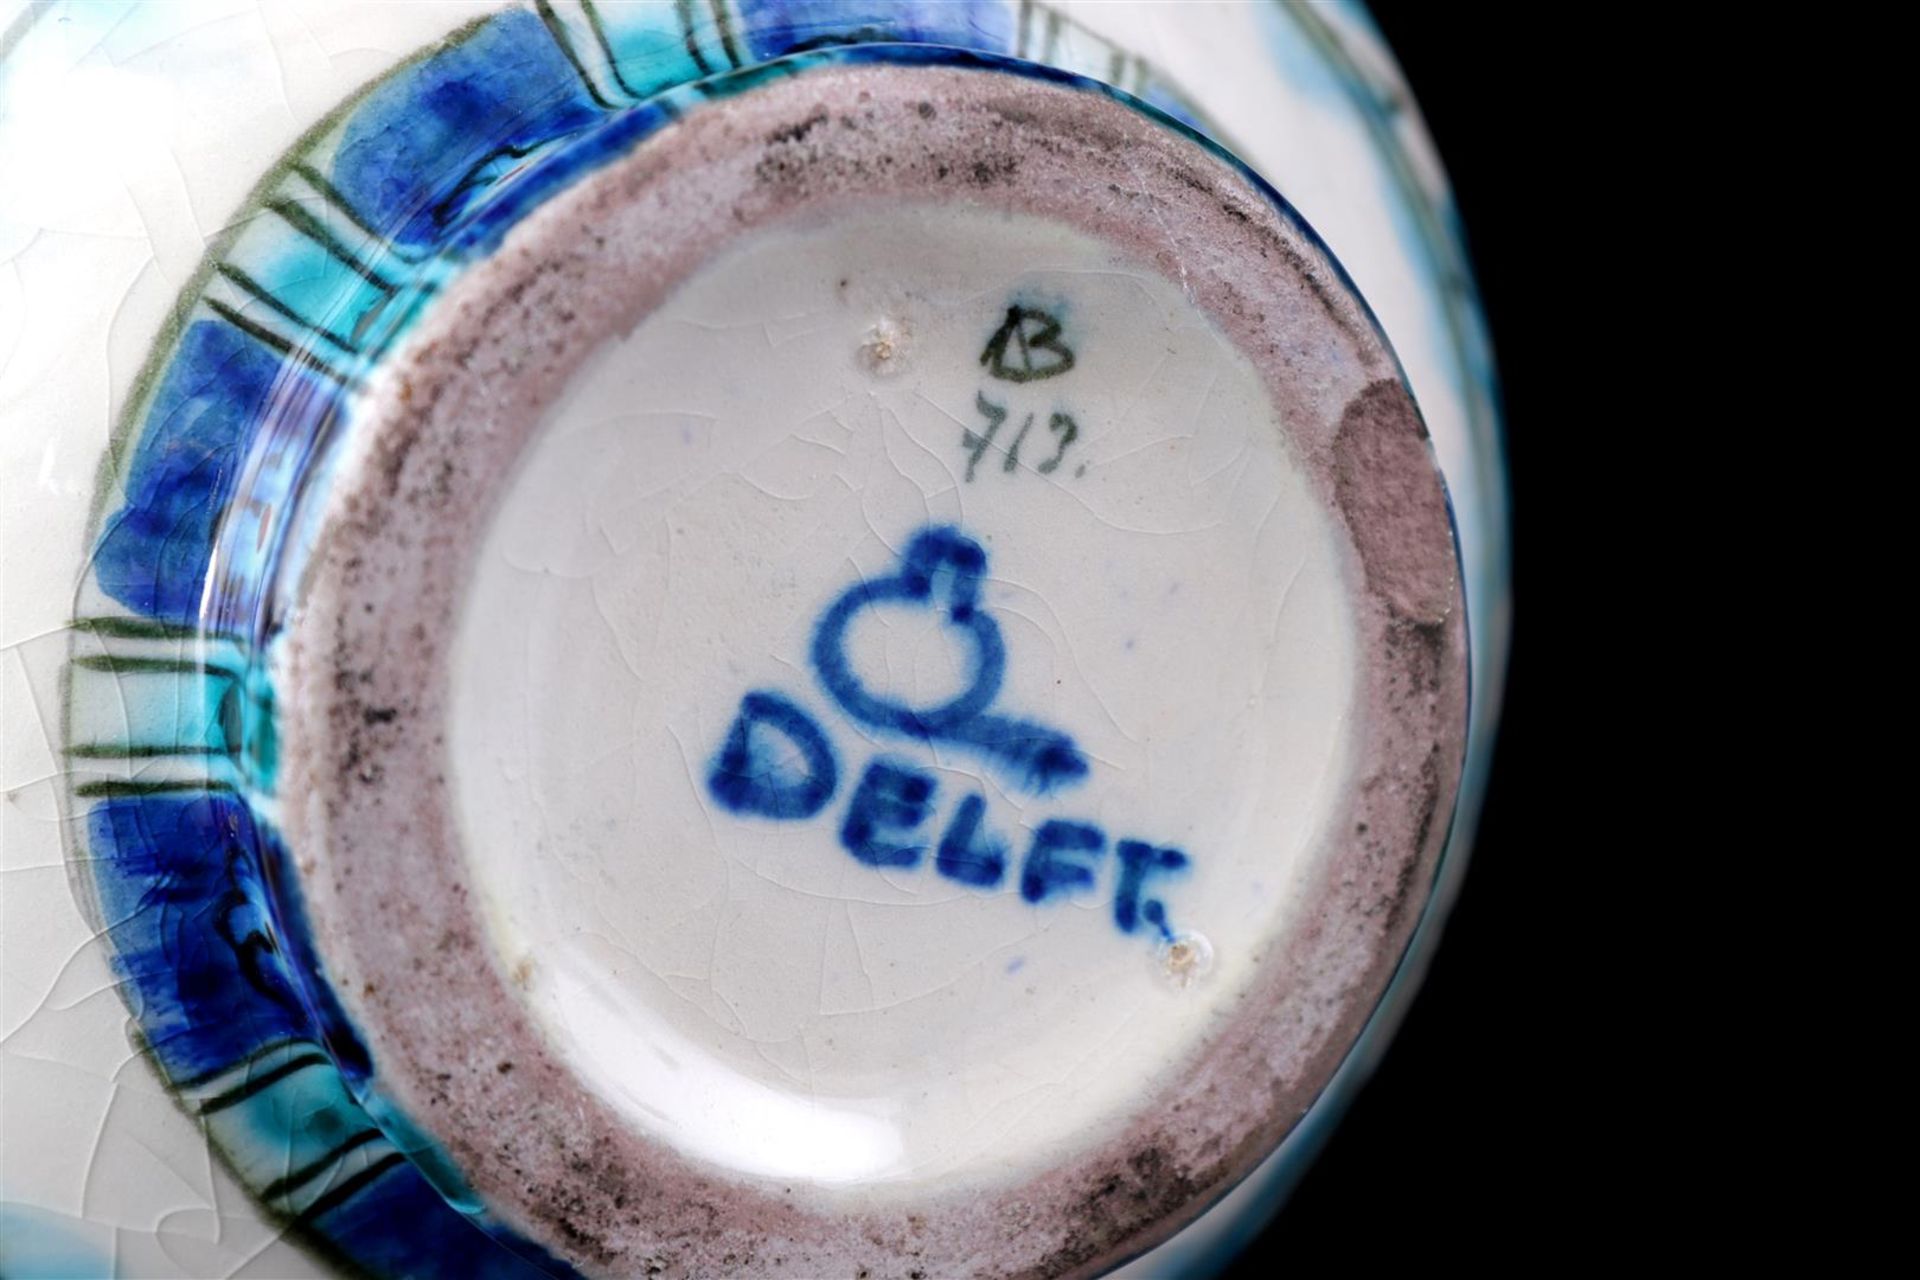 Porceleyne Fles Delft earthenware knob vase - Bild 4 aus 4